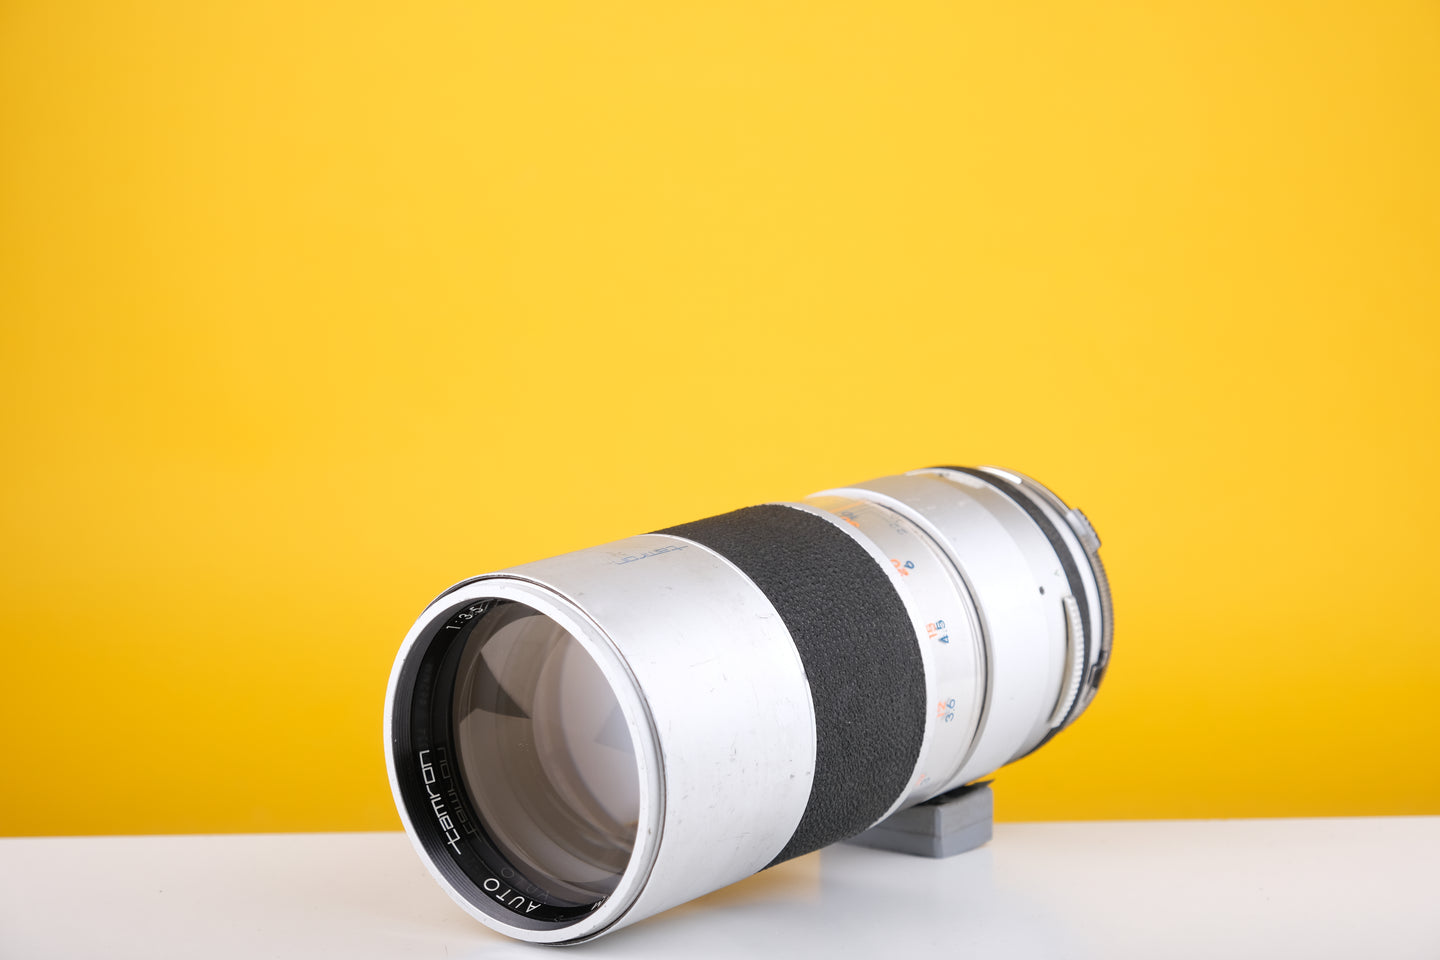 Tamron 200mm f3.5 Lens